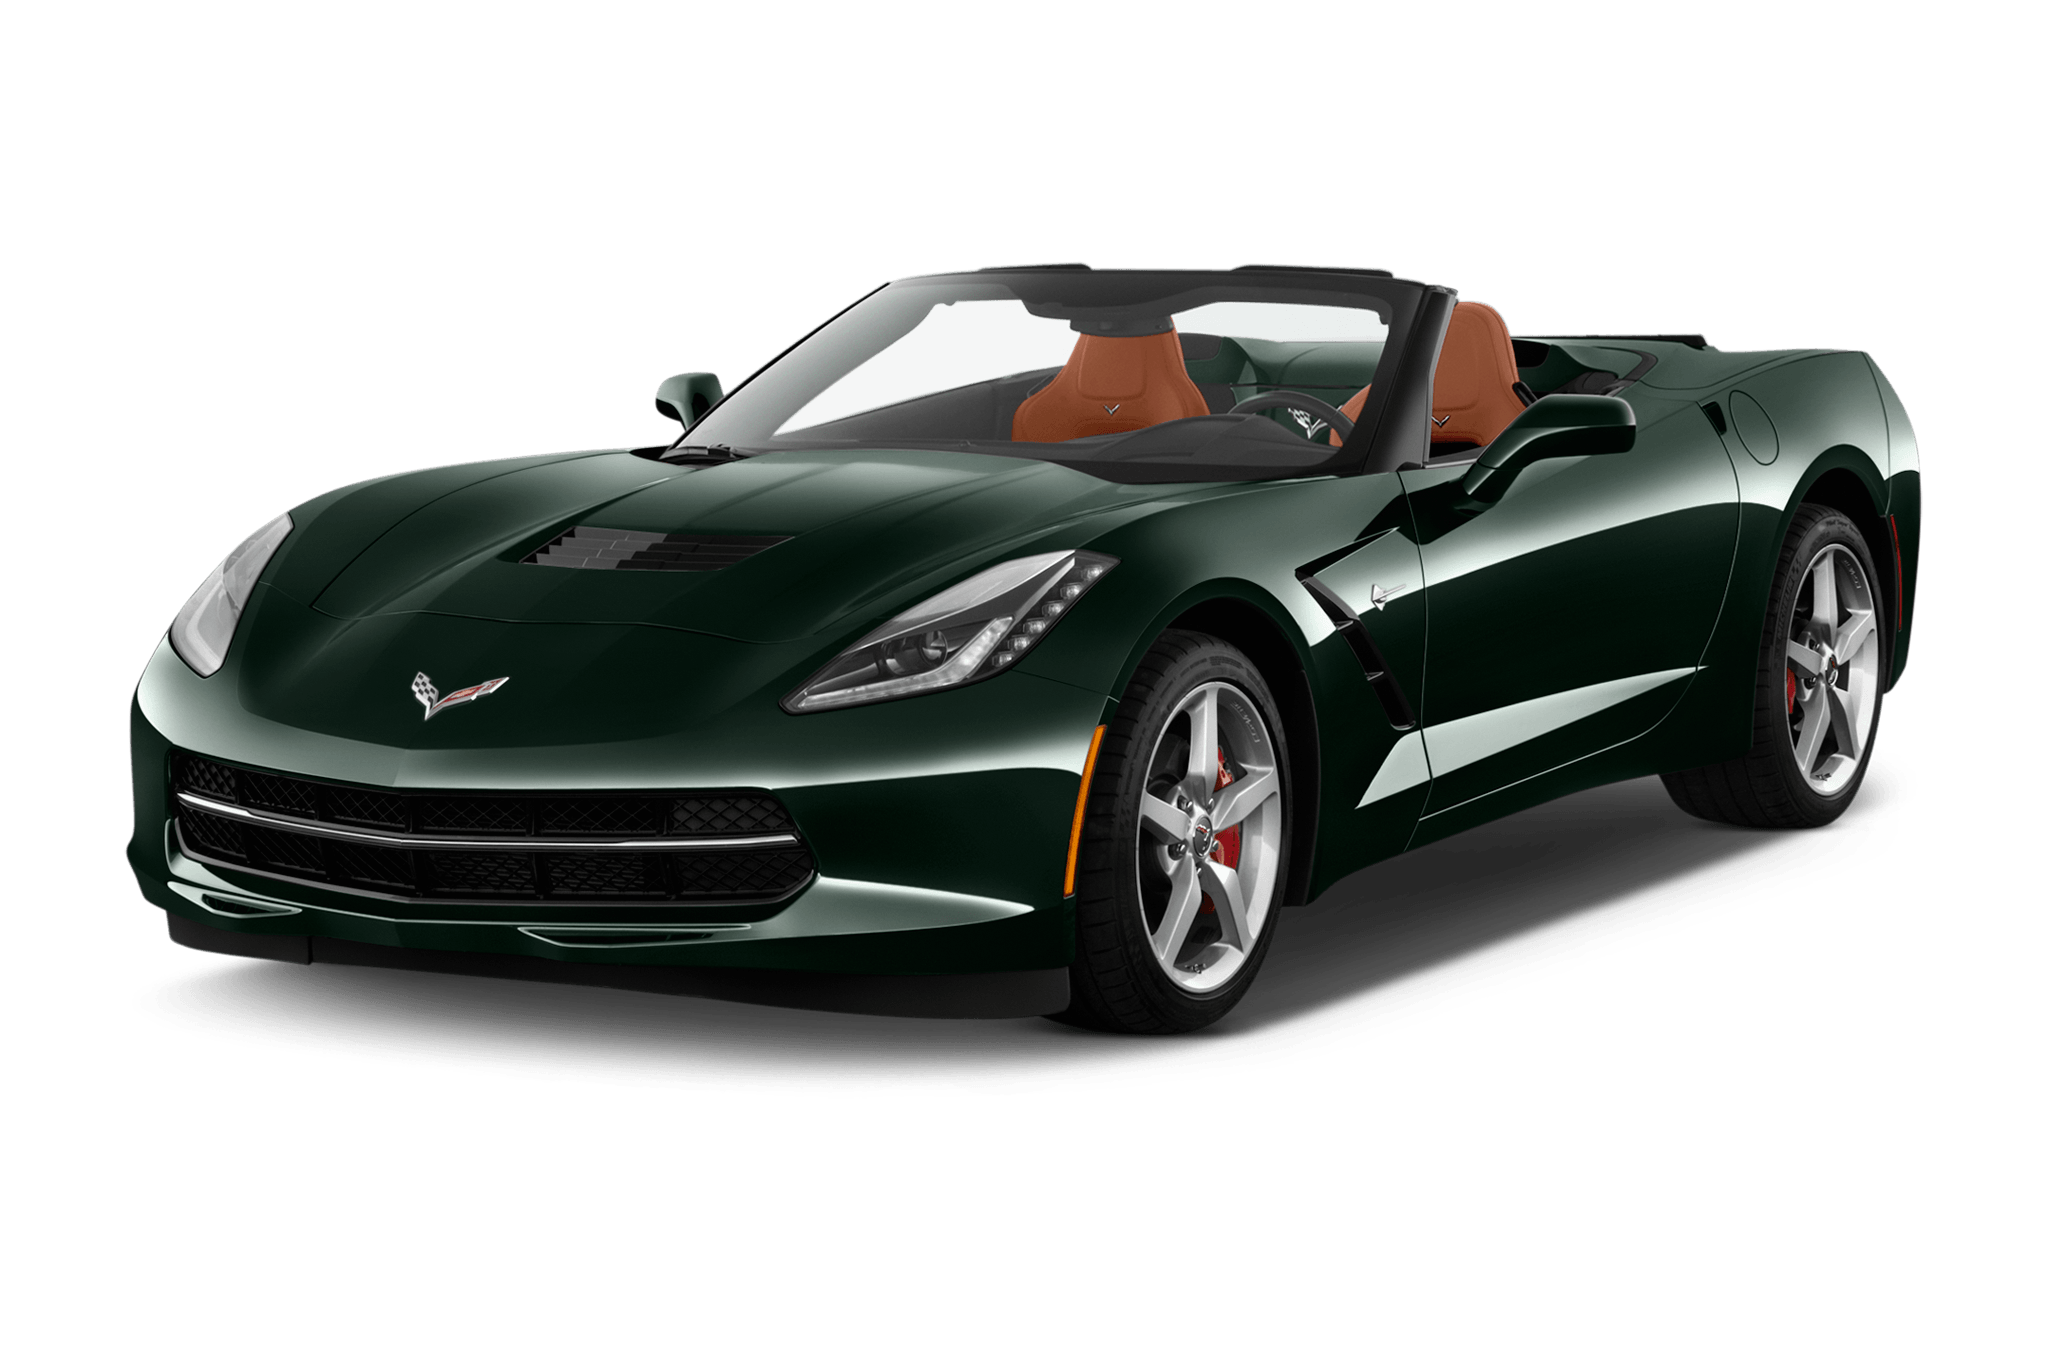 2017 Corvette Stingray Logo - 2017 Chevrolet Corvette Reviews and Rating | Motortrend